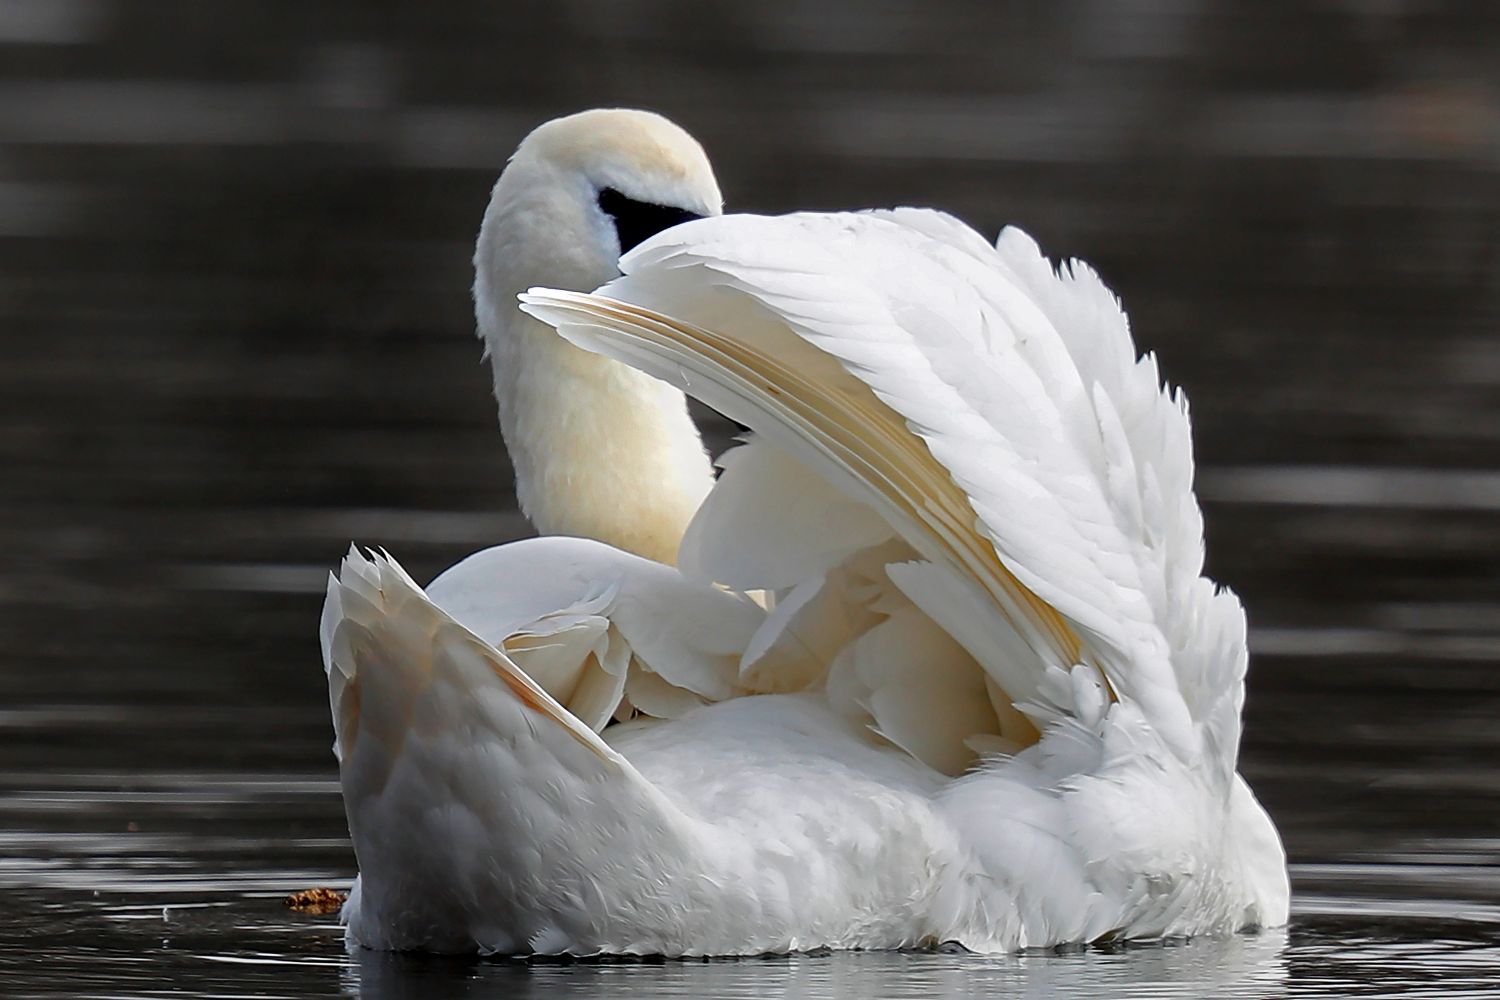 Swan playing hide and seek